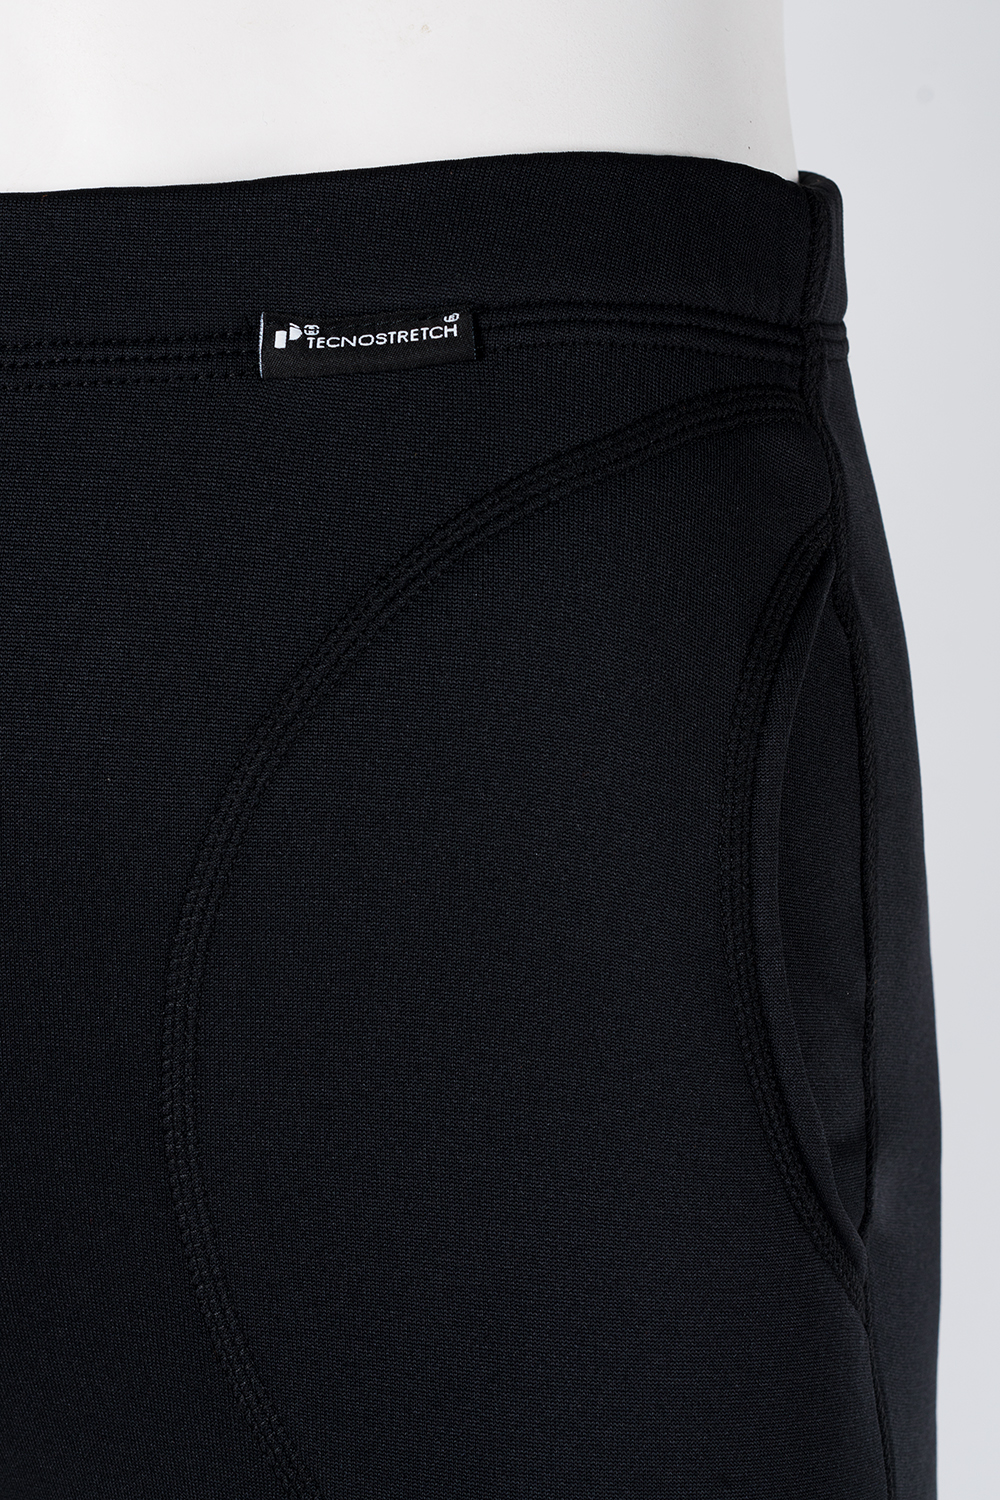 Теплые женские брюки термобелье Edit купить в интернет магазине O3 Ozone